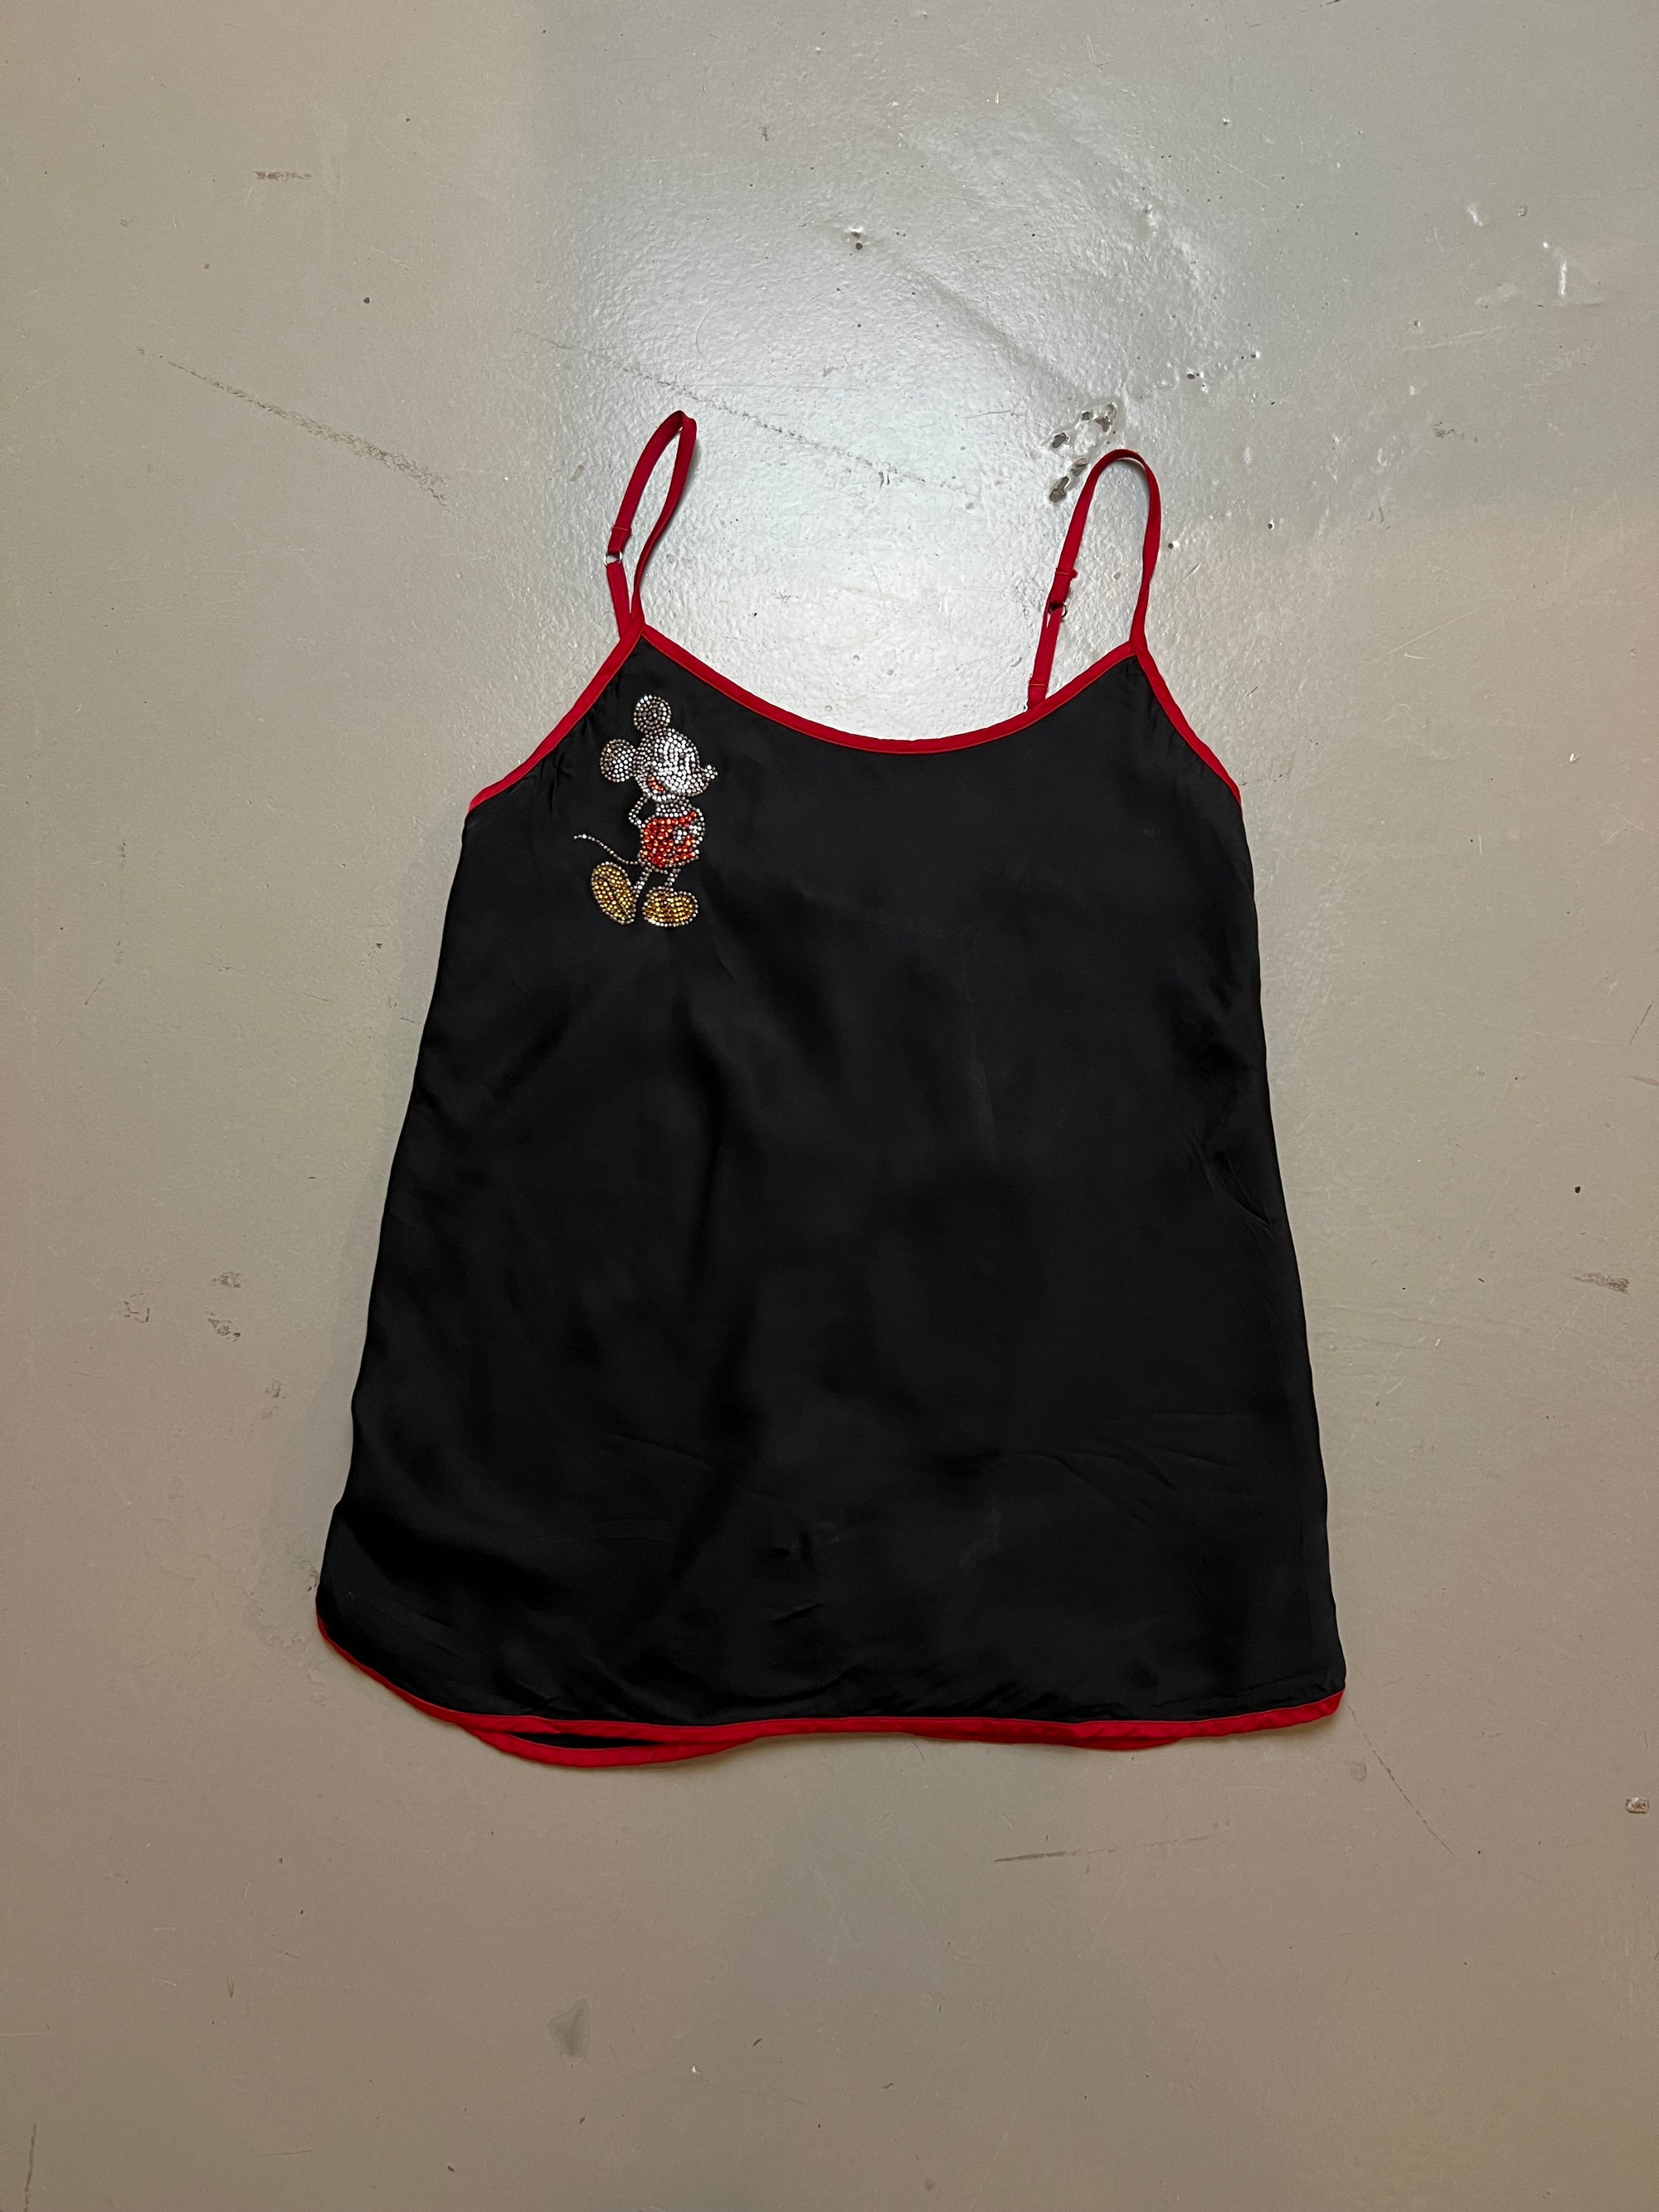 Produkt Bild Vintage Slip in Top/Dress Black S/M Disney von vorne.